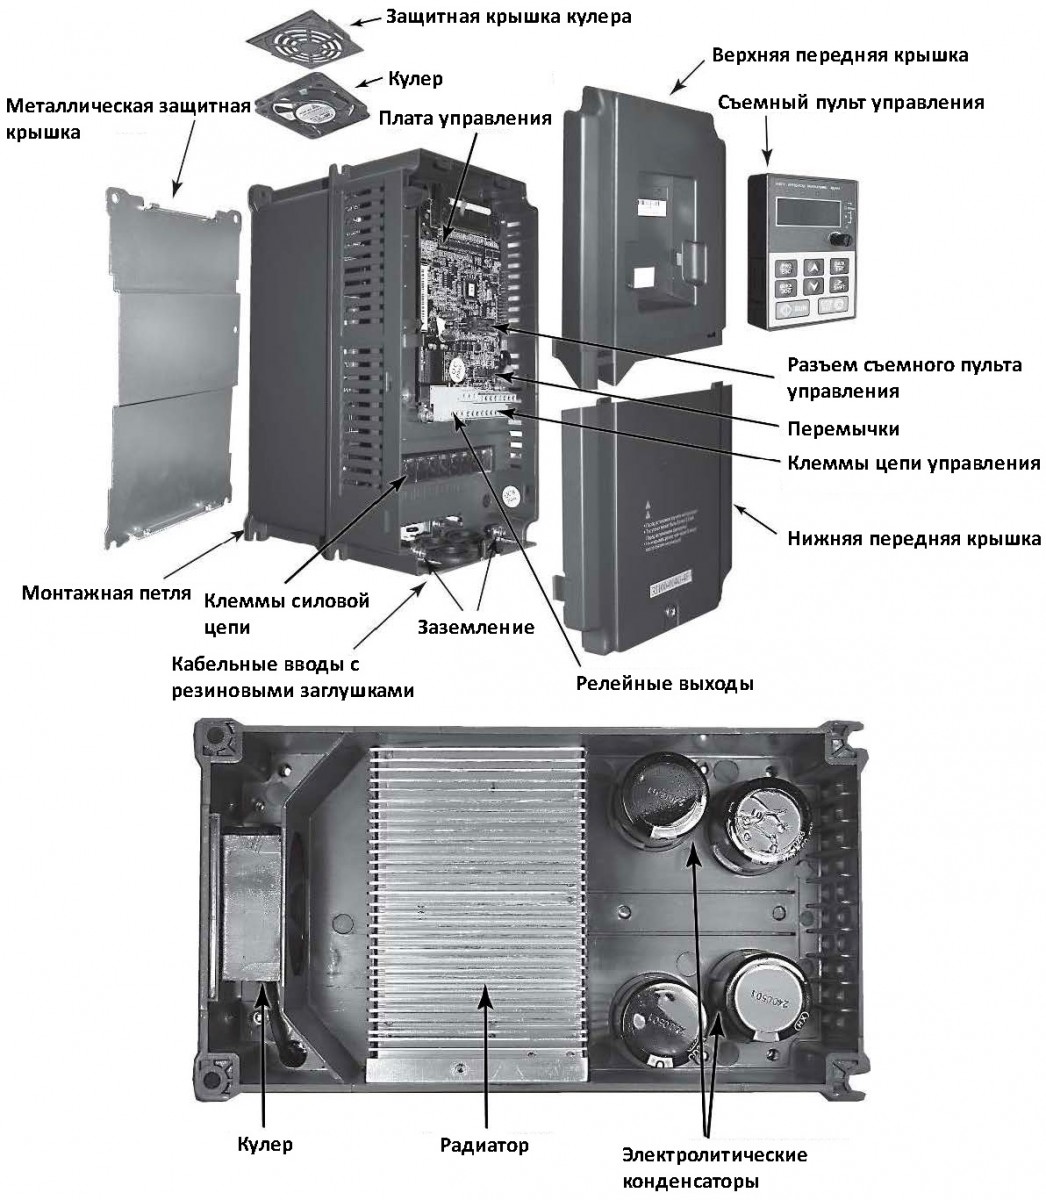 Преобразователь частоты INVT 380 В GD100-5R5G-4